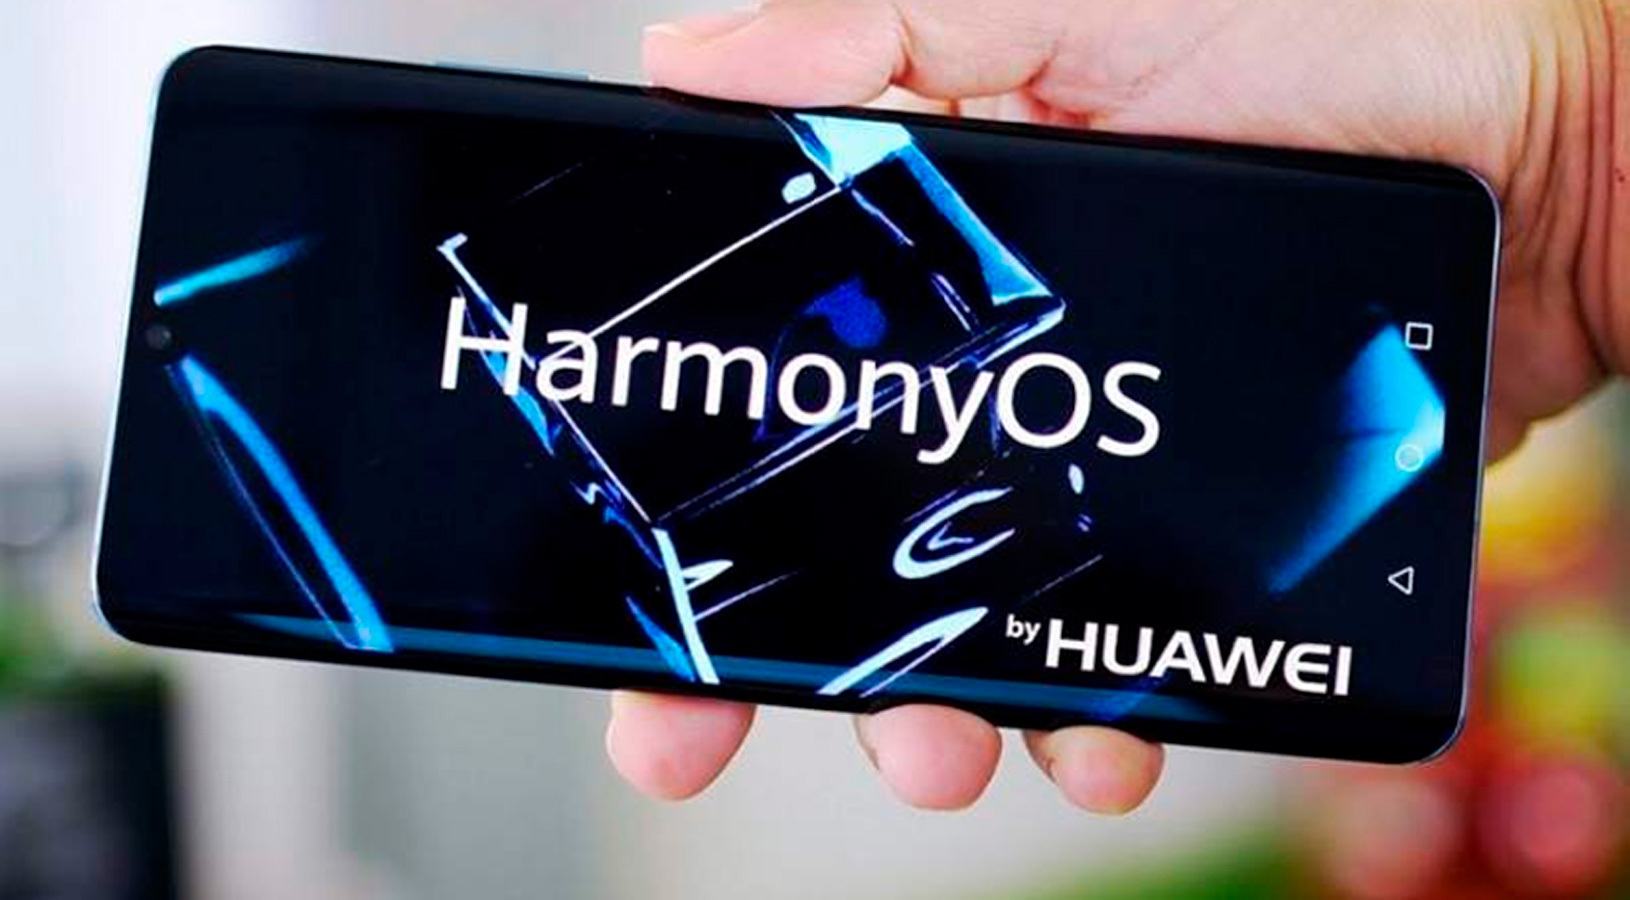   Huawei,   HarmonyOS 2 